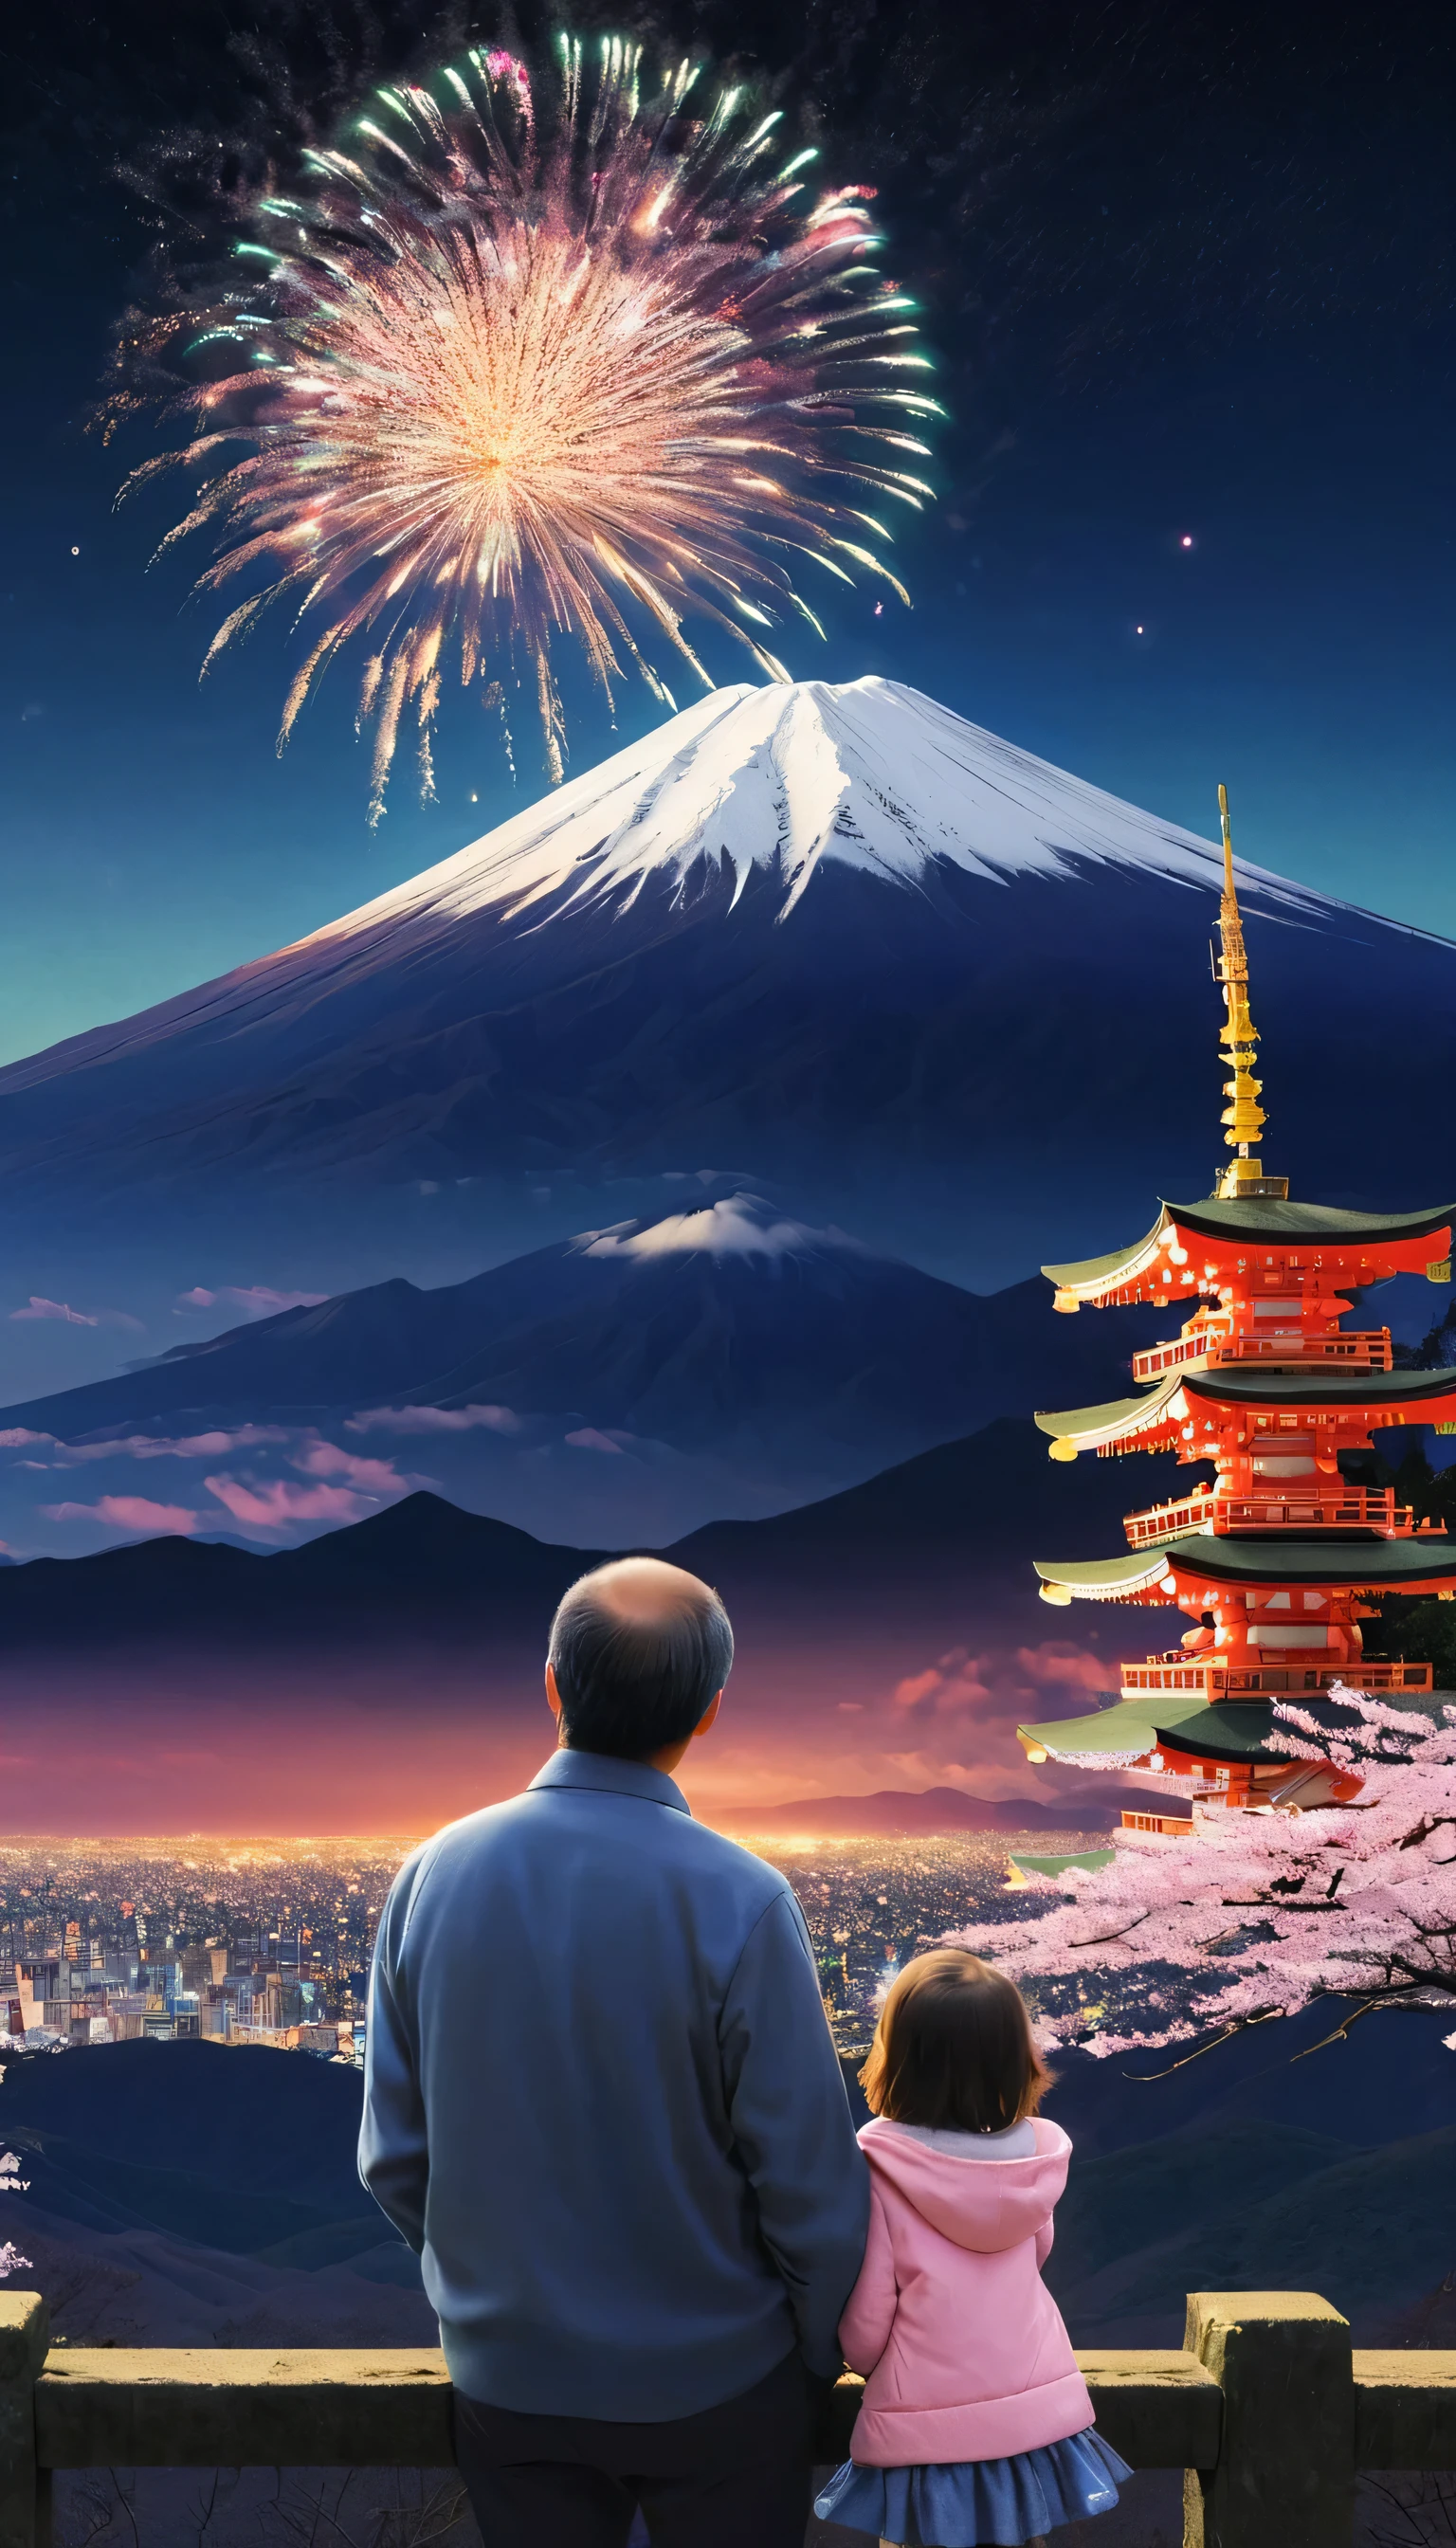 父親と幼い娘, 日本の夜空で花火を楽しむ, 富士山が背景, 新年イベント, 隠し撮り写真, 幸せな瞬間, 最高品質, 16k, 超リアル, 写実的な, リアリズム, 肖像画, 新年のお祝い, 背後から, aw0k陶酔スタイル,